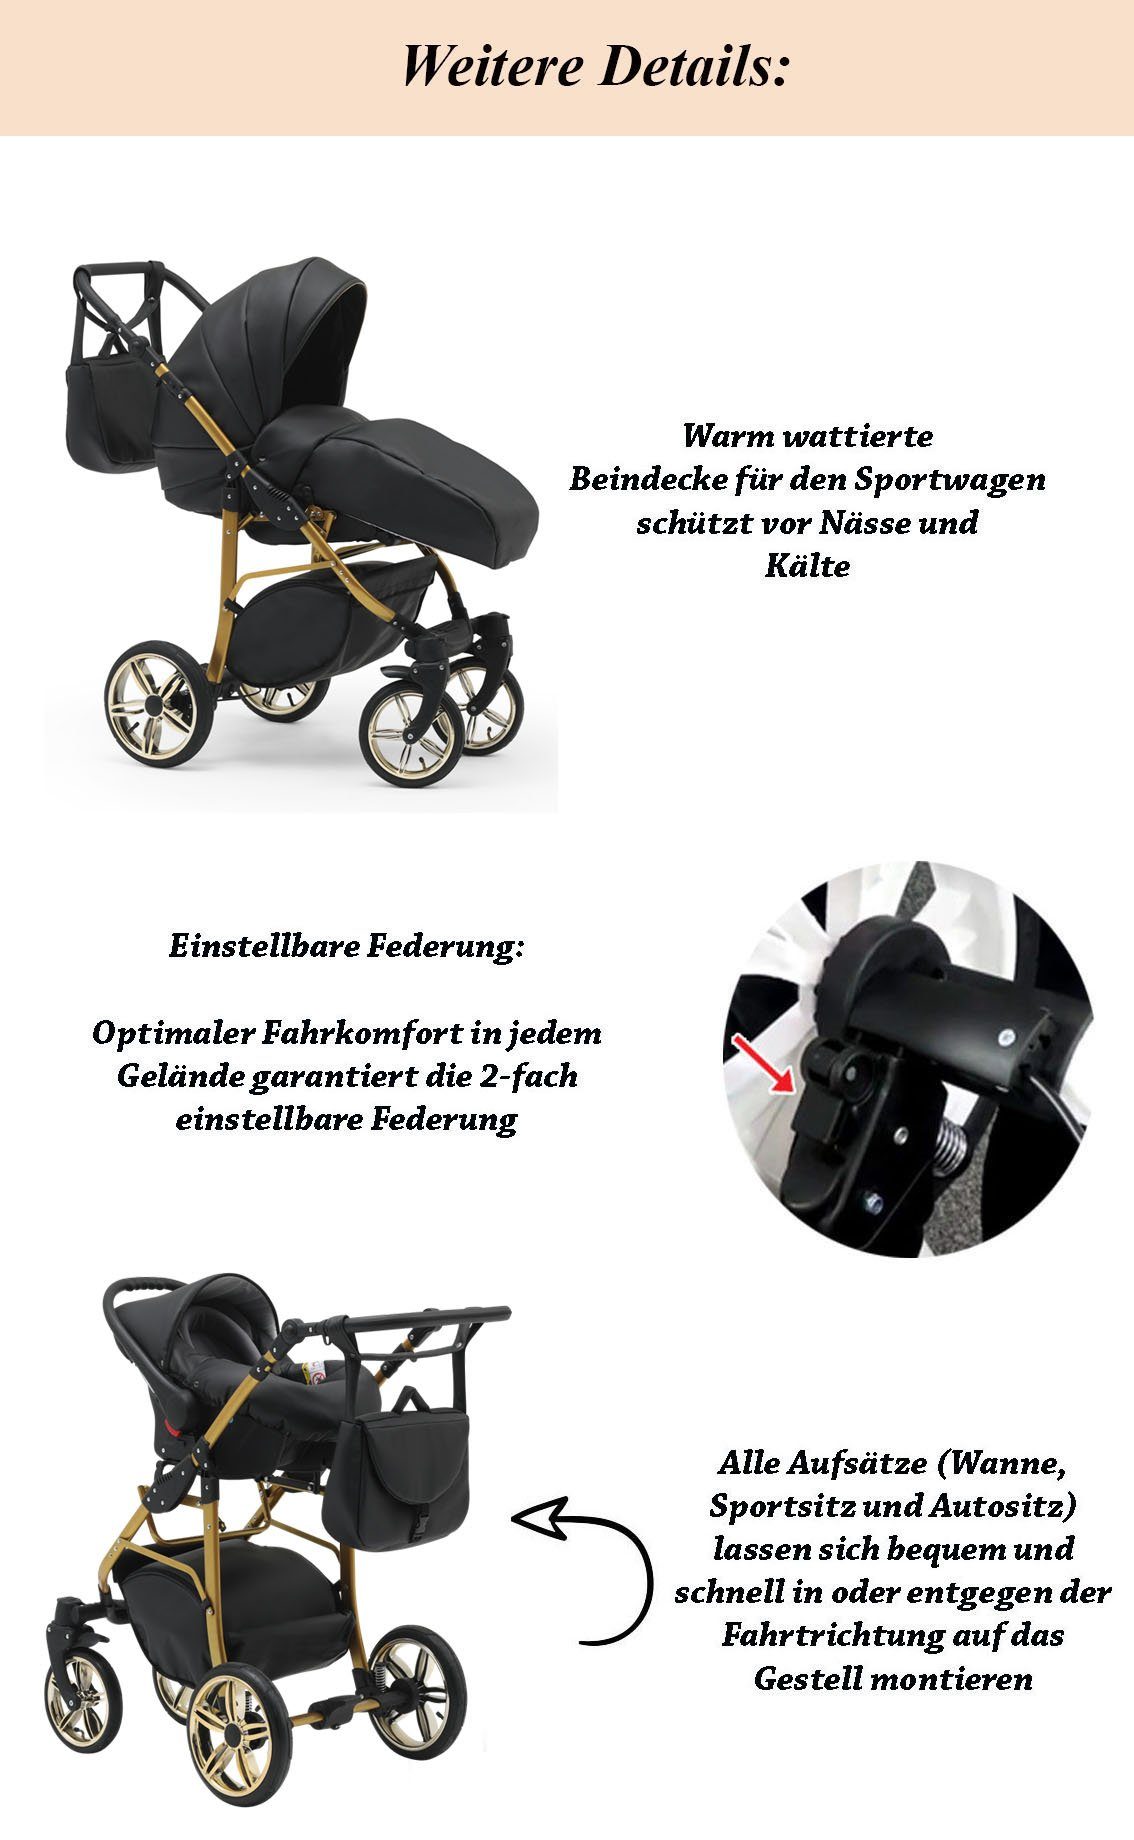 ECO Teile Beige-Schwarz - Kinderwagen-Set in Gold 1 Farben 16 46 Cosmo in babies-on-wheels 3 - Kombi-Kinderwagen